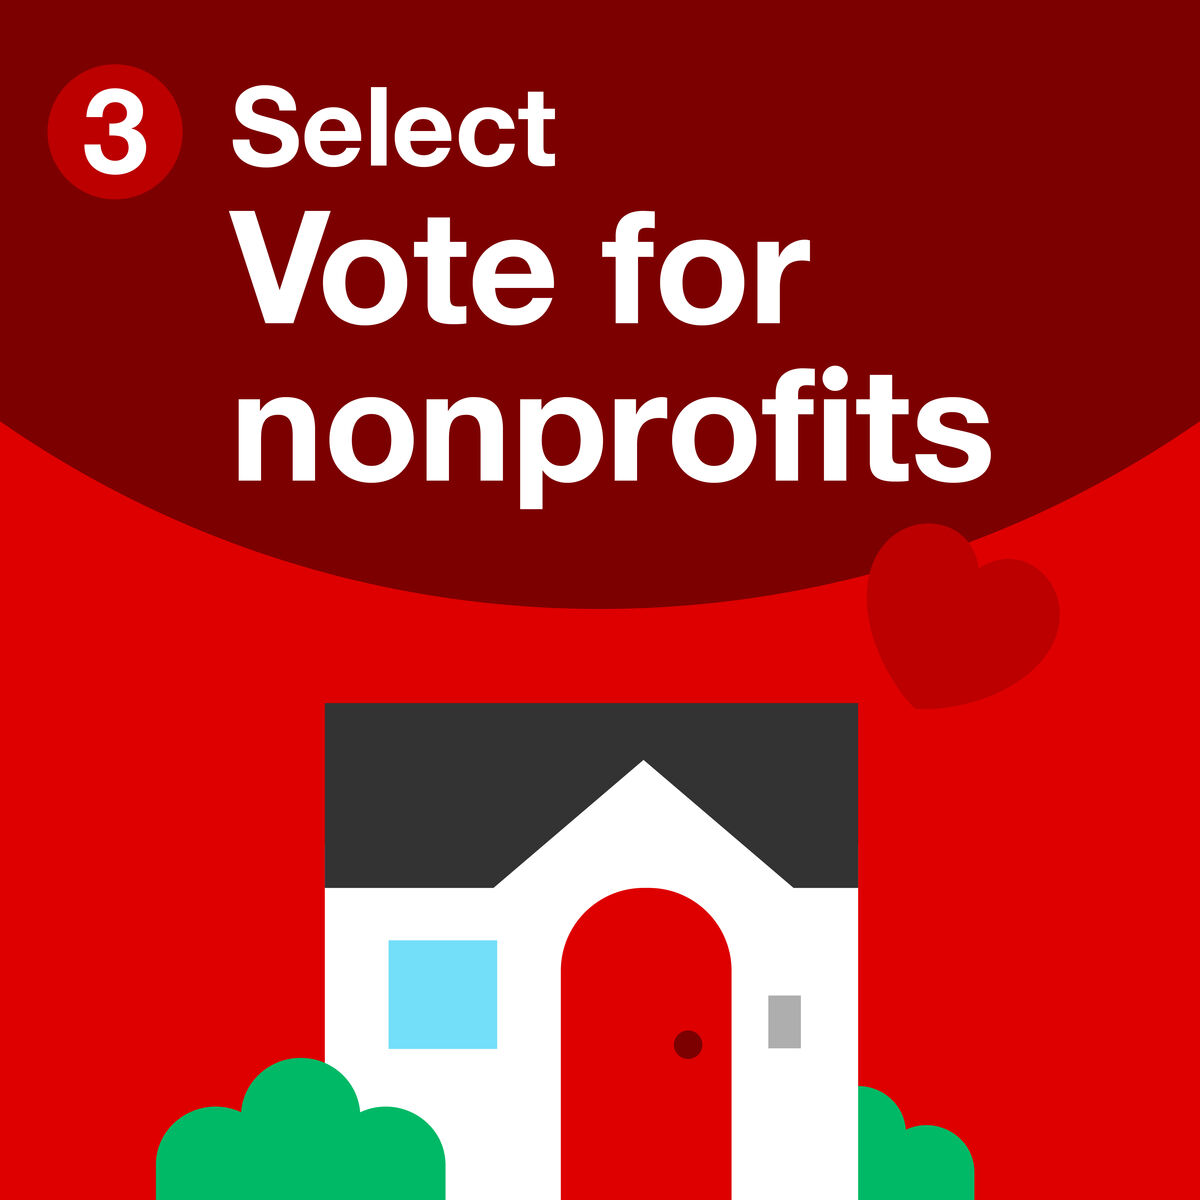 Step 3, vote for nonprofits